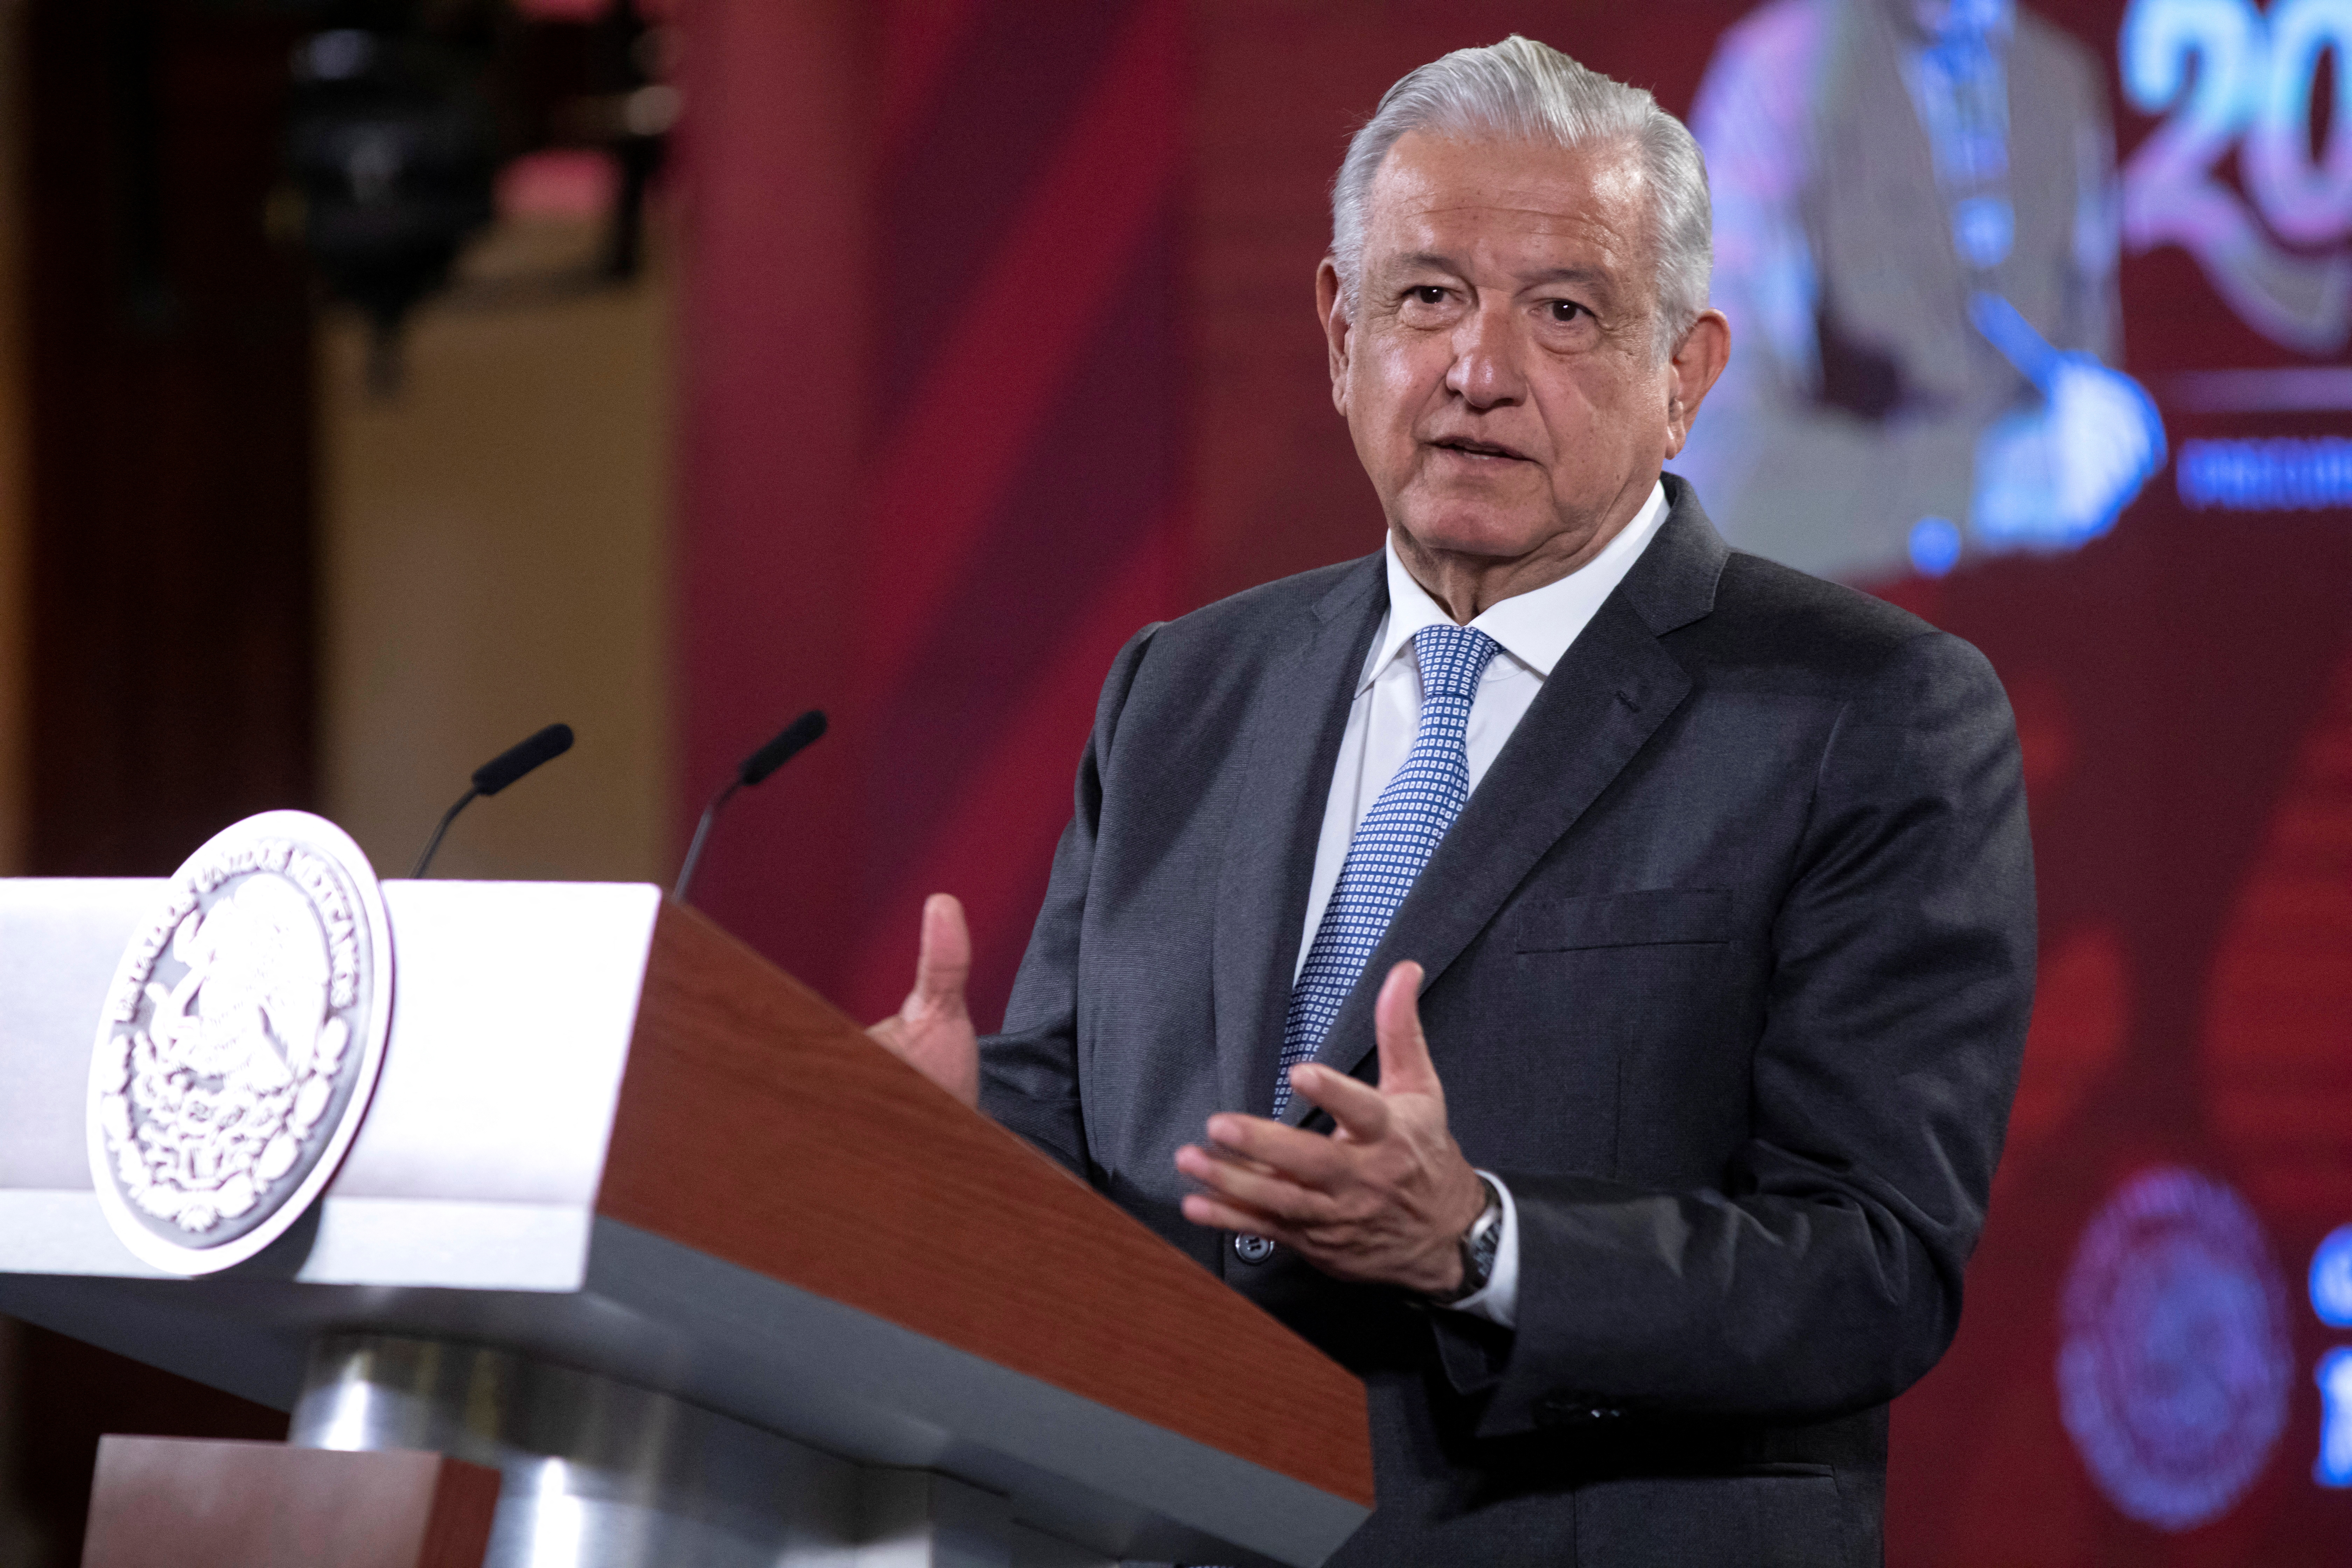 El presidente mencionó que su Gobierno sostiene una disputa con el bloque conservador. (Foto: Mexico's Presidency/Handout via REUTERS)